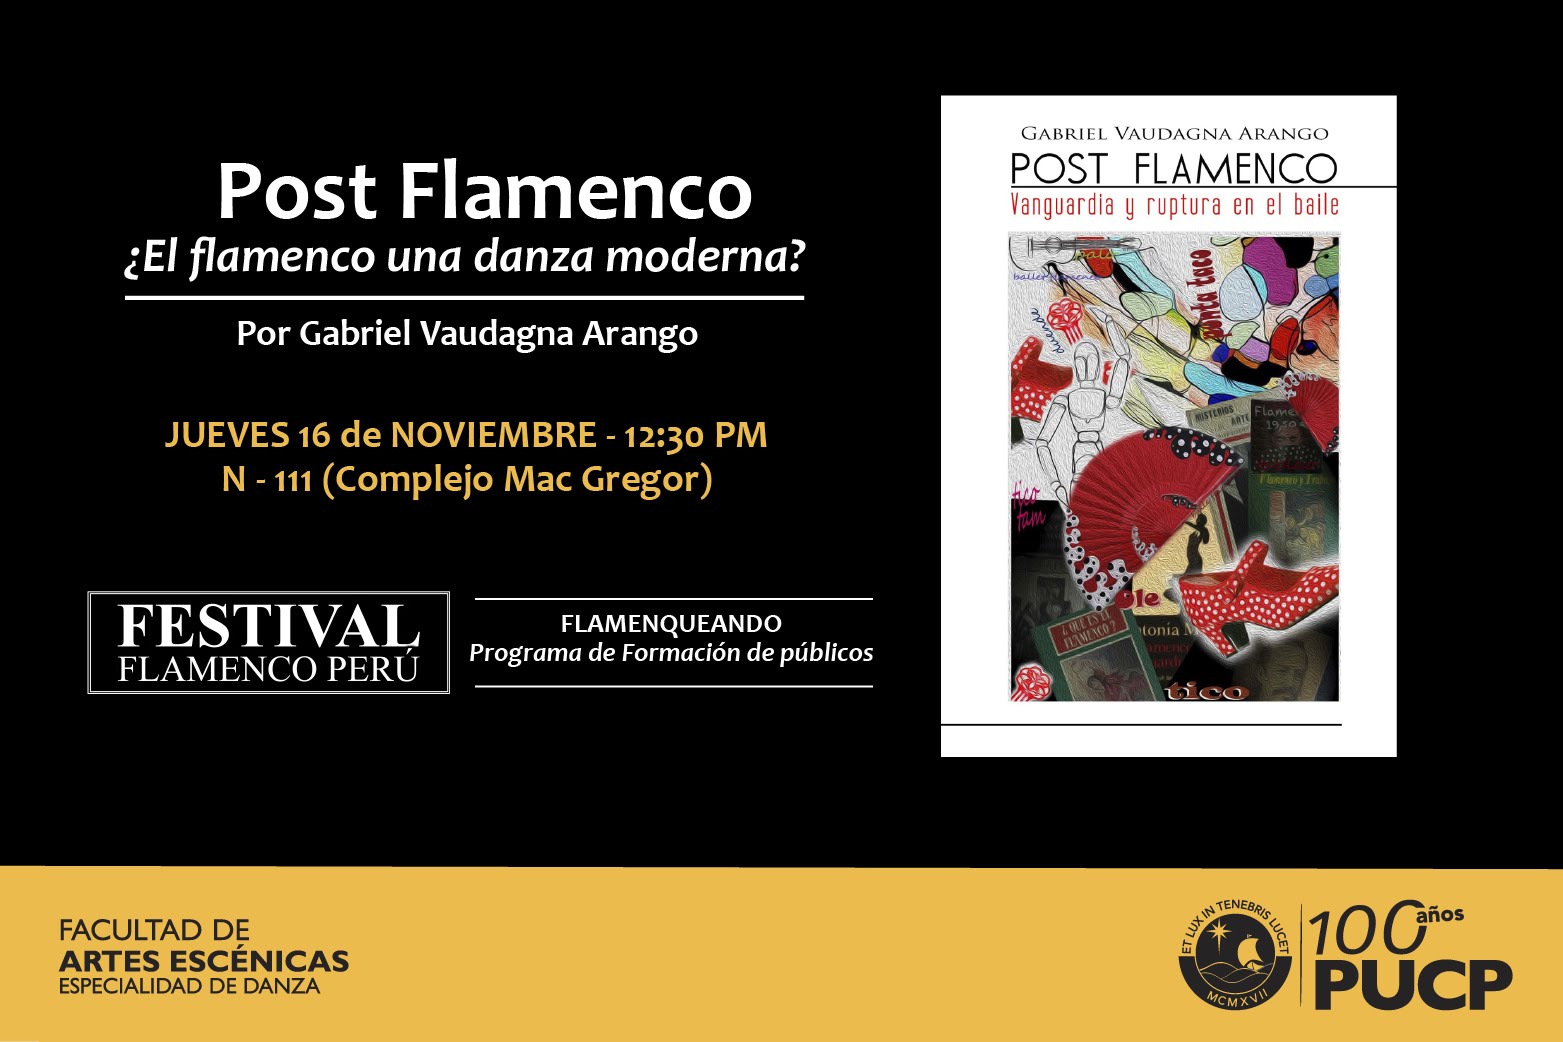 Festival Flamenco Peru